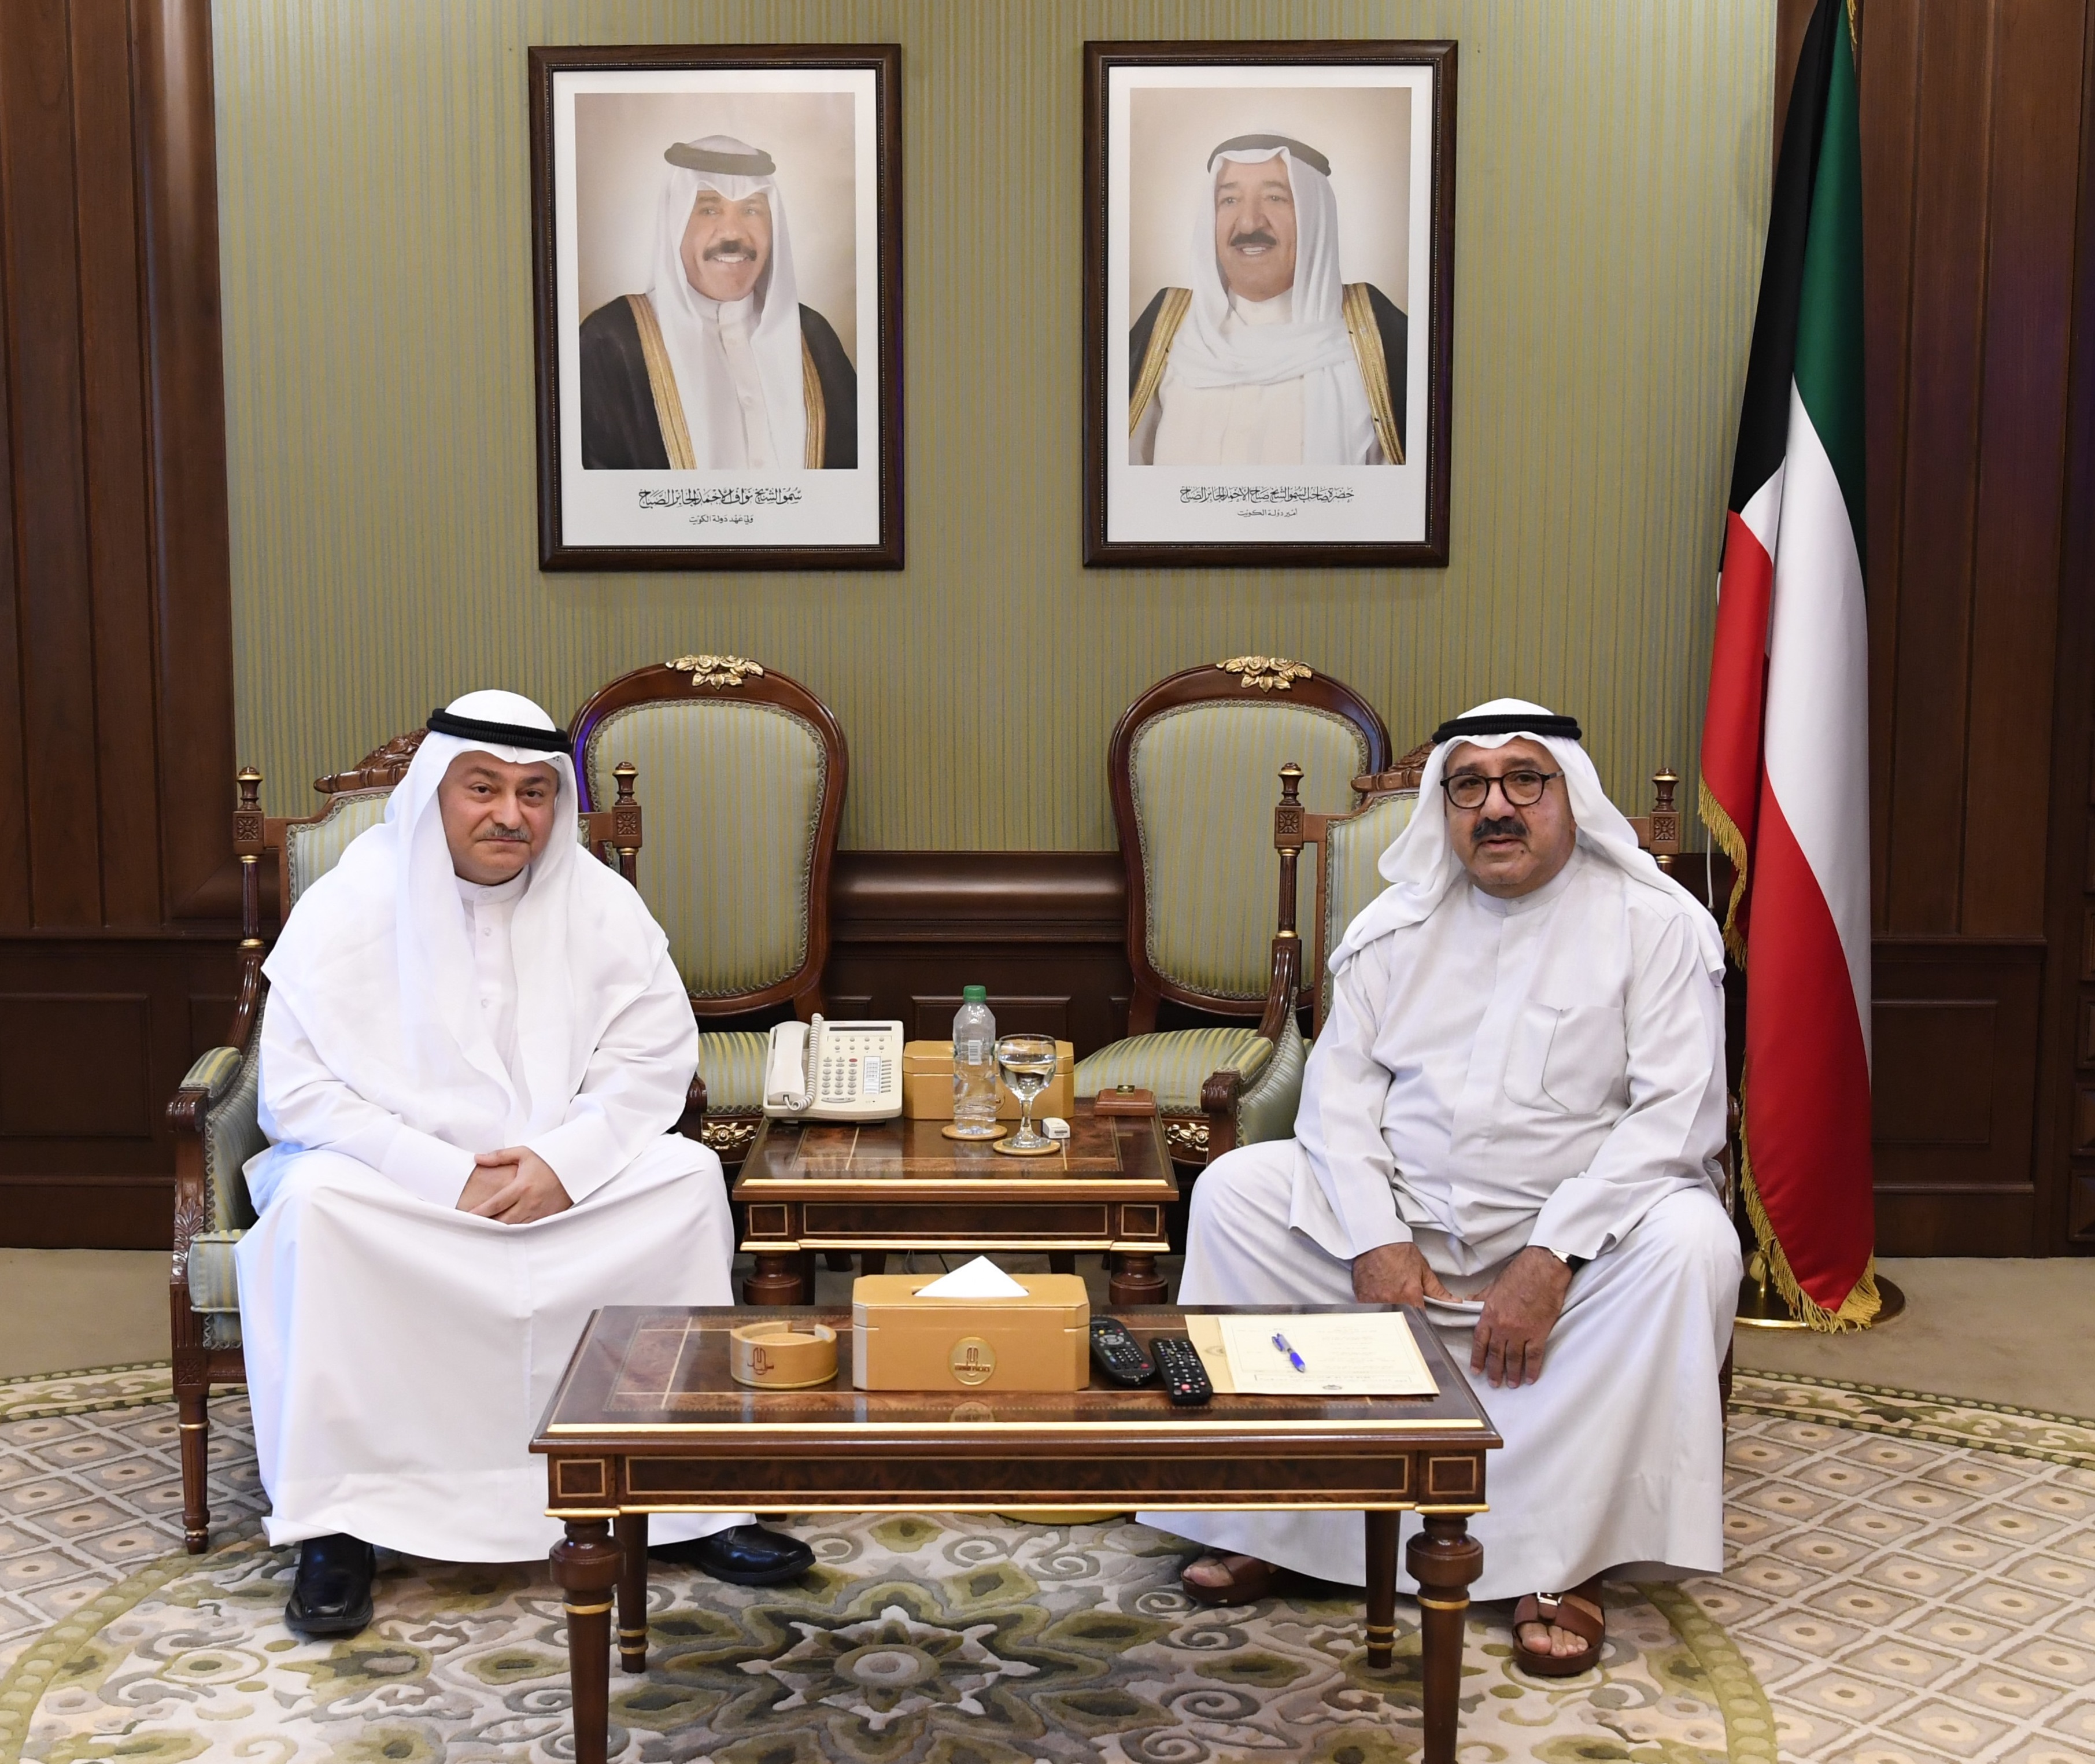 Sheikh Nasser Sabah Al-Ahmad Al-Sabah, the Acting Prime Minister and Minister of Defense received justice Husam Bahbahani